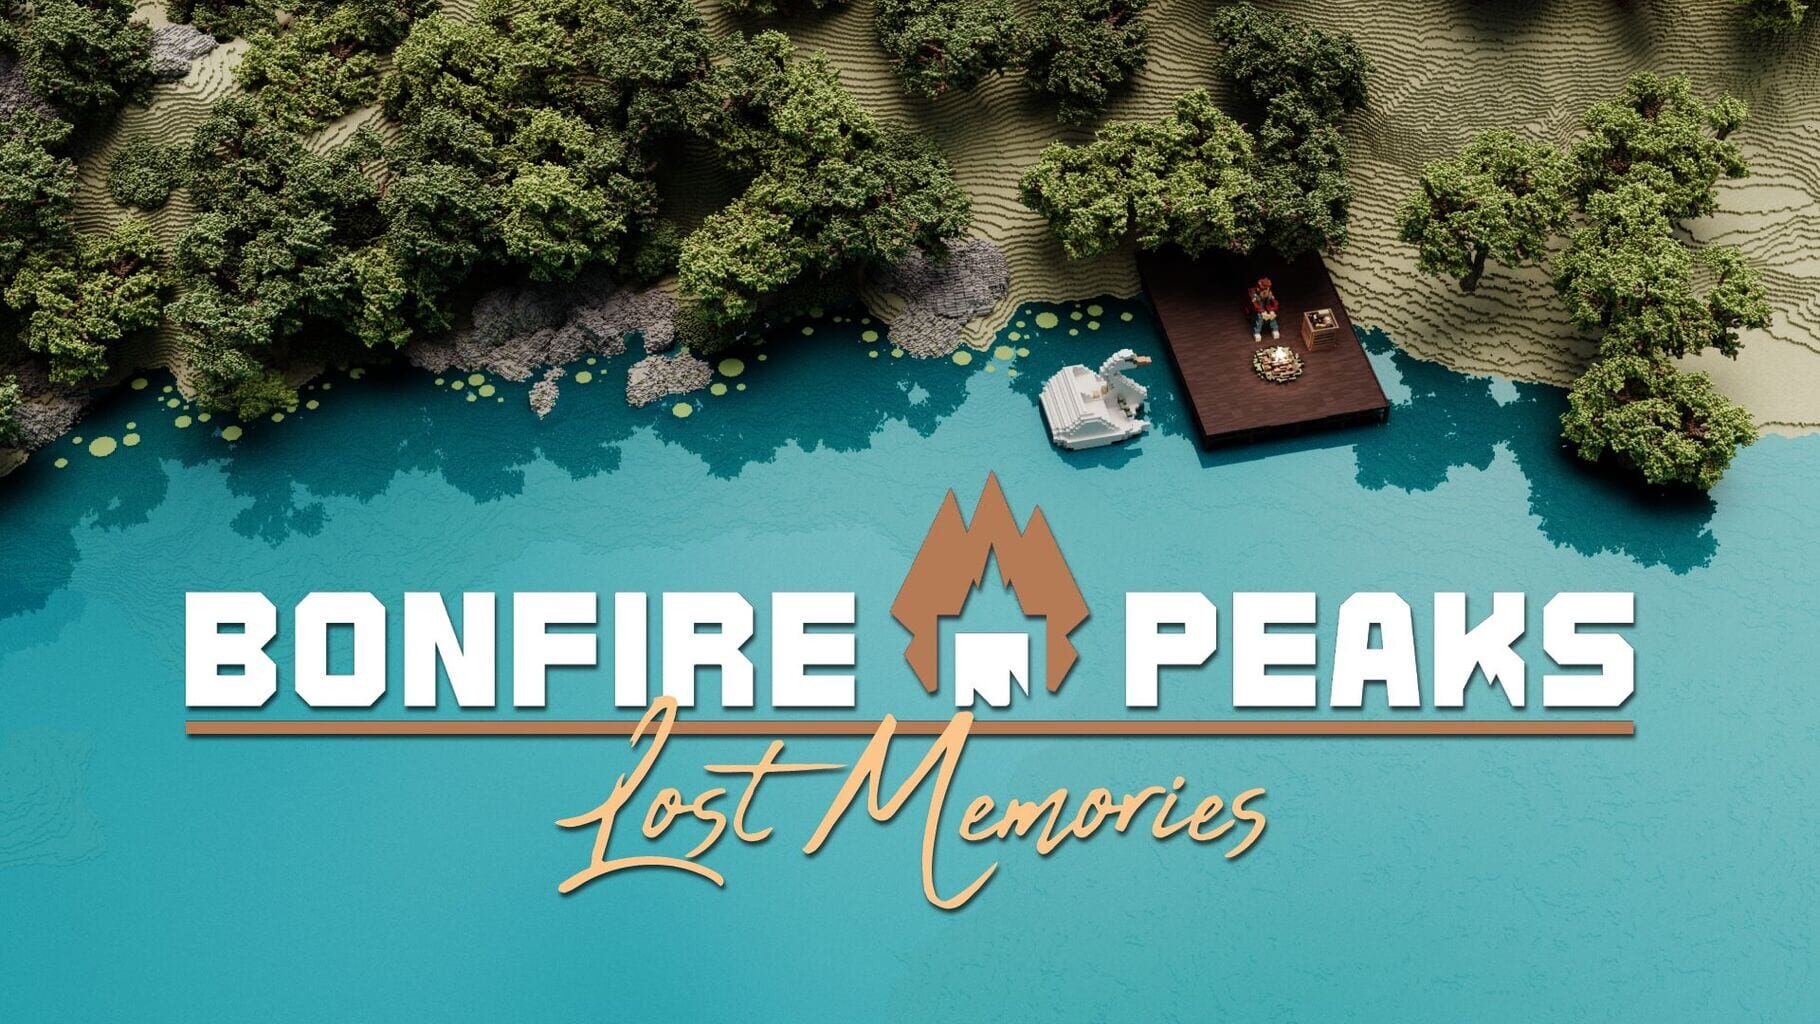 Arte - Bonfire Peaks: Lost Memories